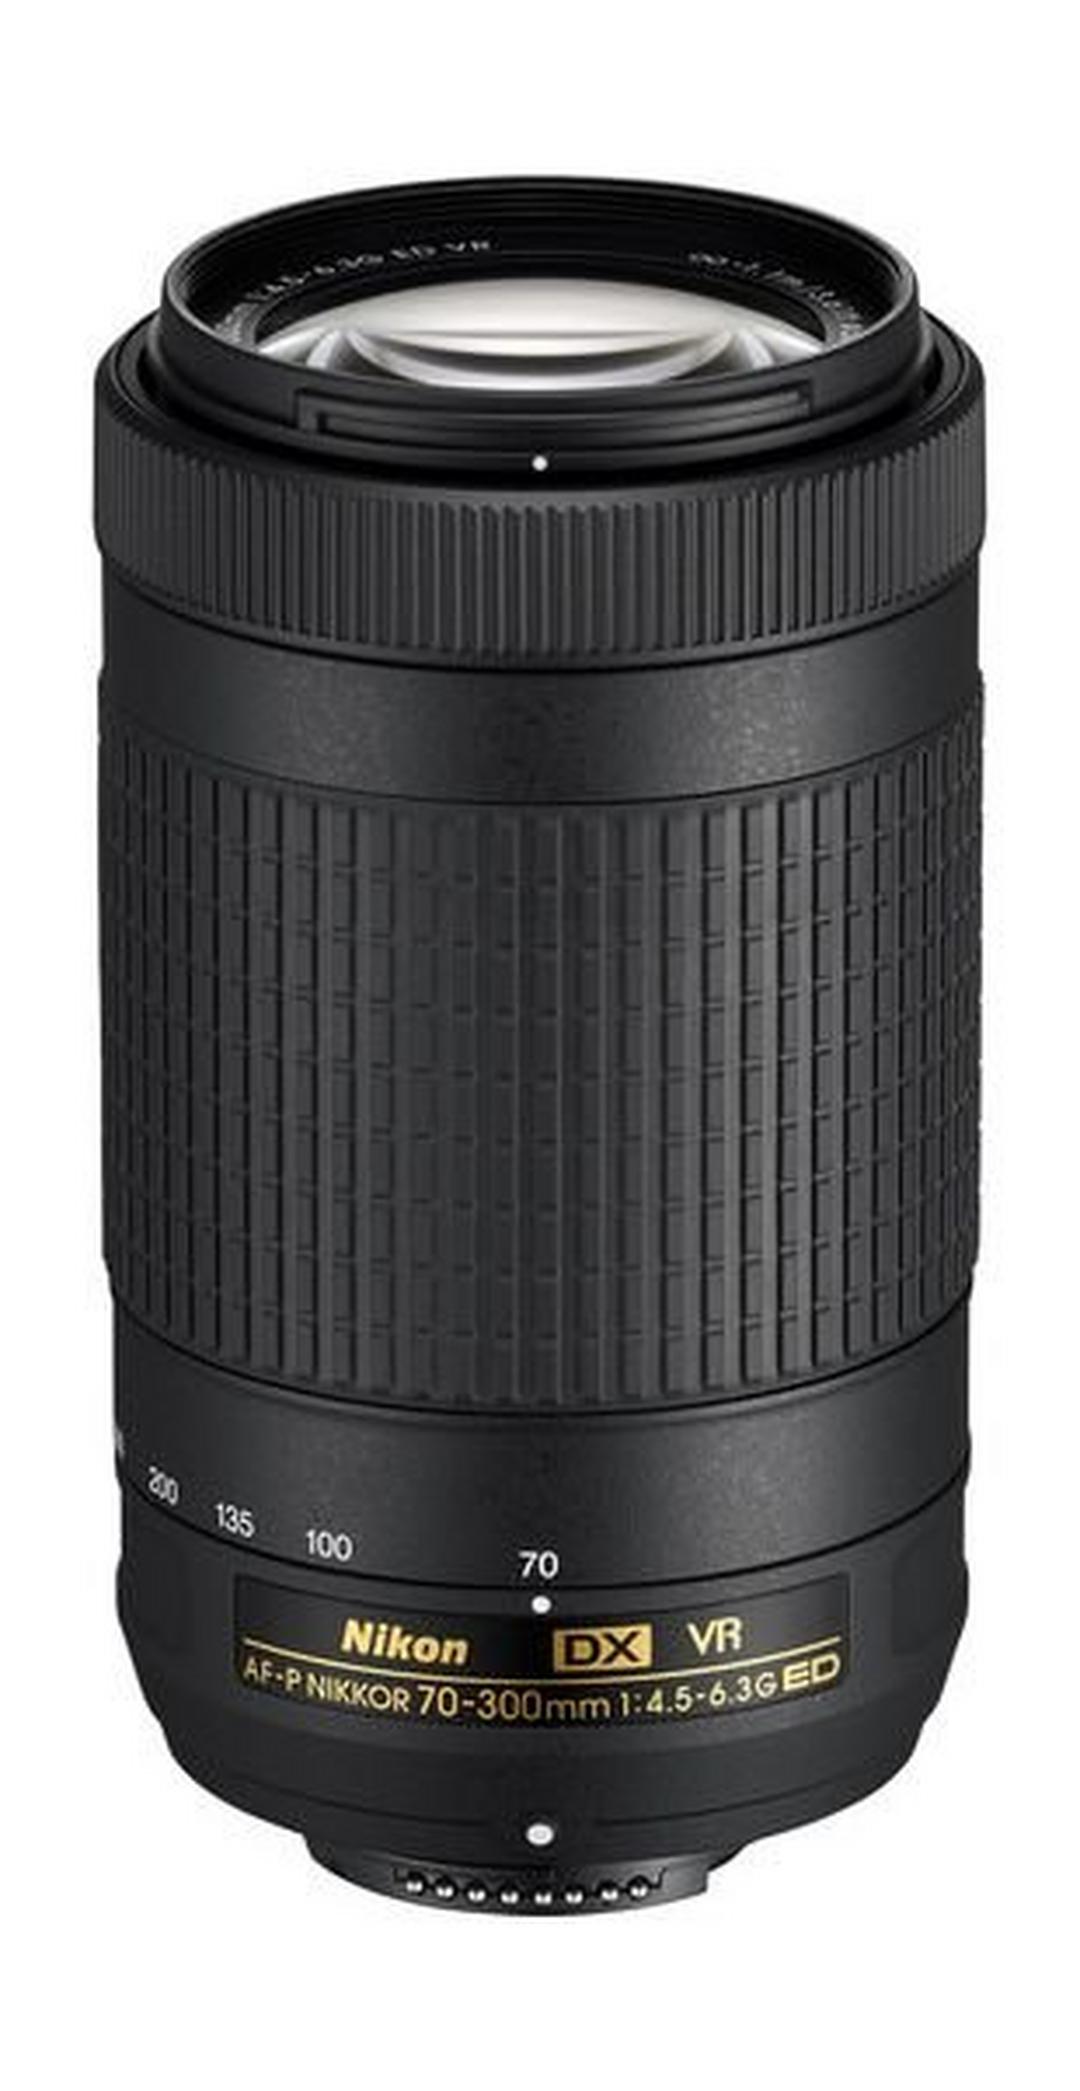 Nikon AF-P DX NIKKOR 70-300mm f/4.5-6.3G ED VR Lens - Black